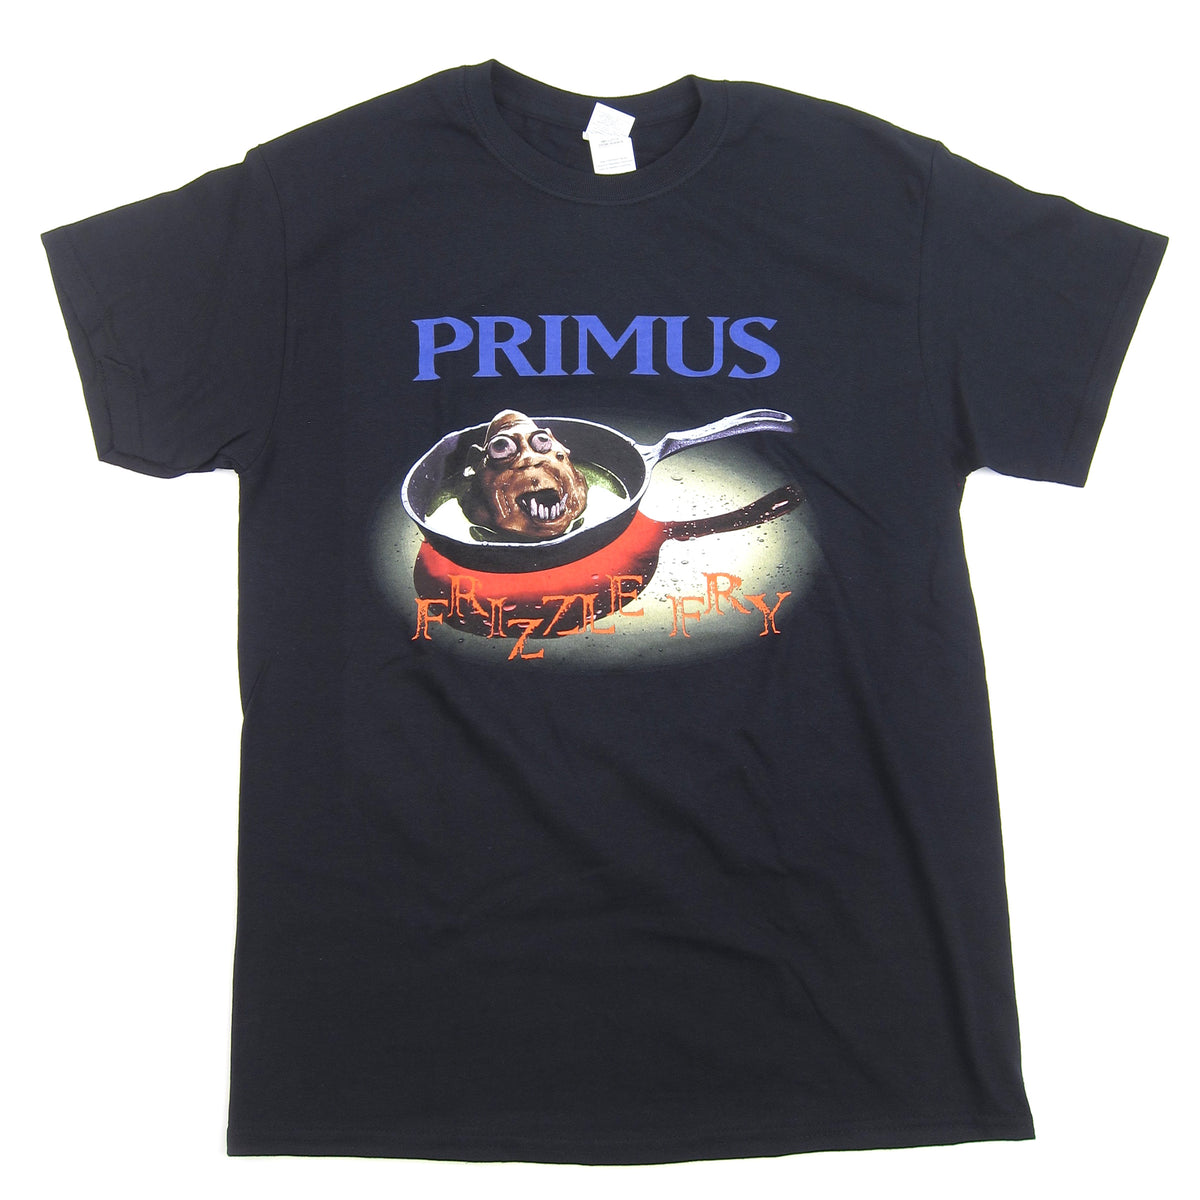 Primus: Frizzle Fry Shirt - Black — TurntableLab.com